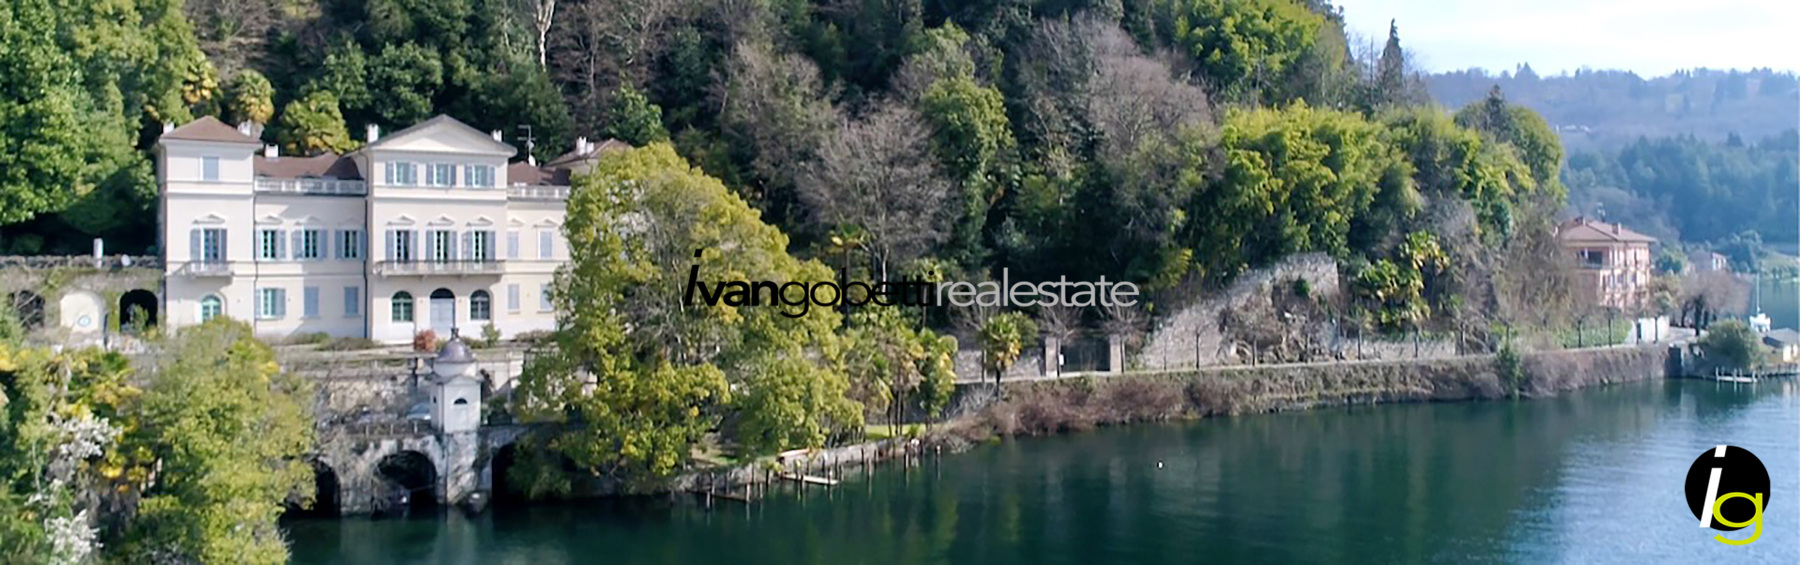 Озеро Орта в Орта-Сан-Джулио на великолепной вилле Натта на продажу Пентхаус с выходом к озеру<br/><span>Код продукта: 200324